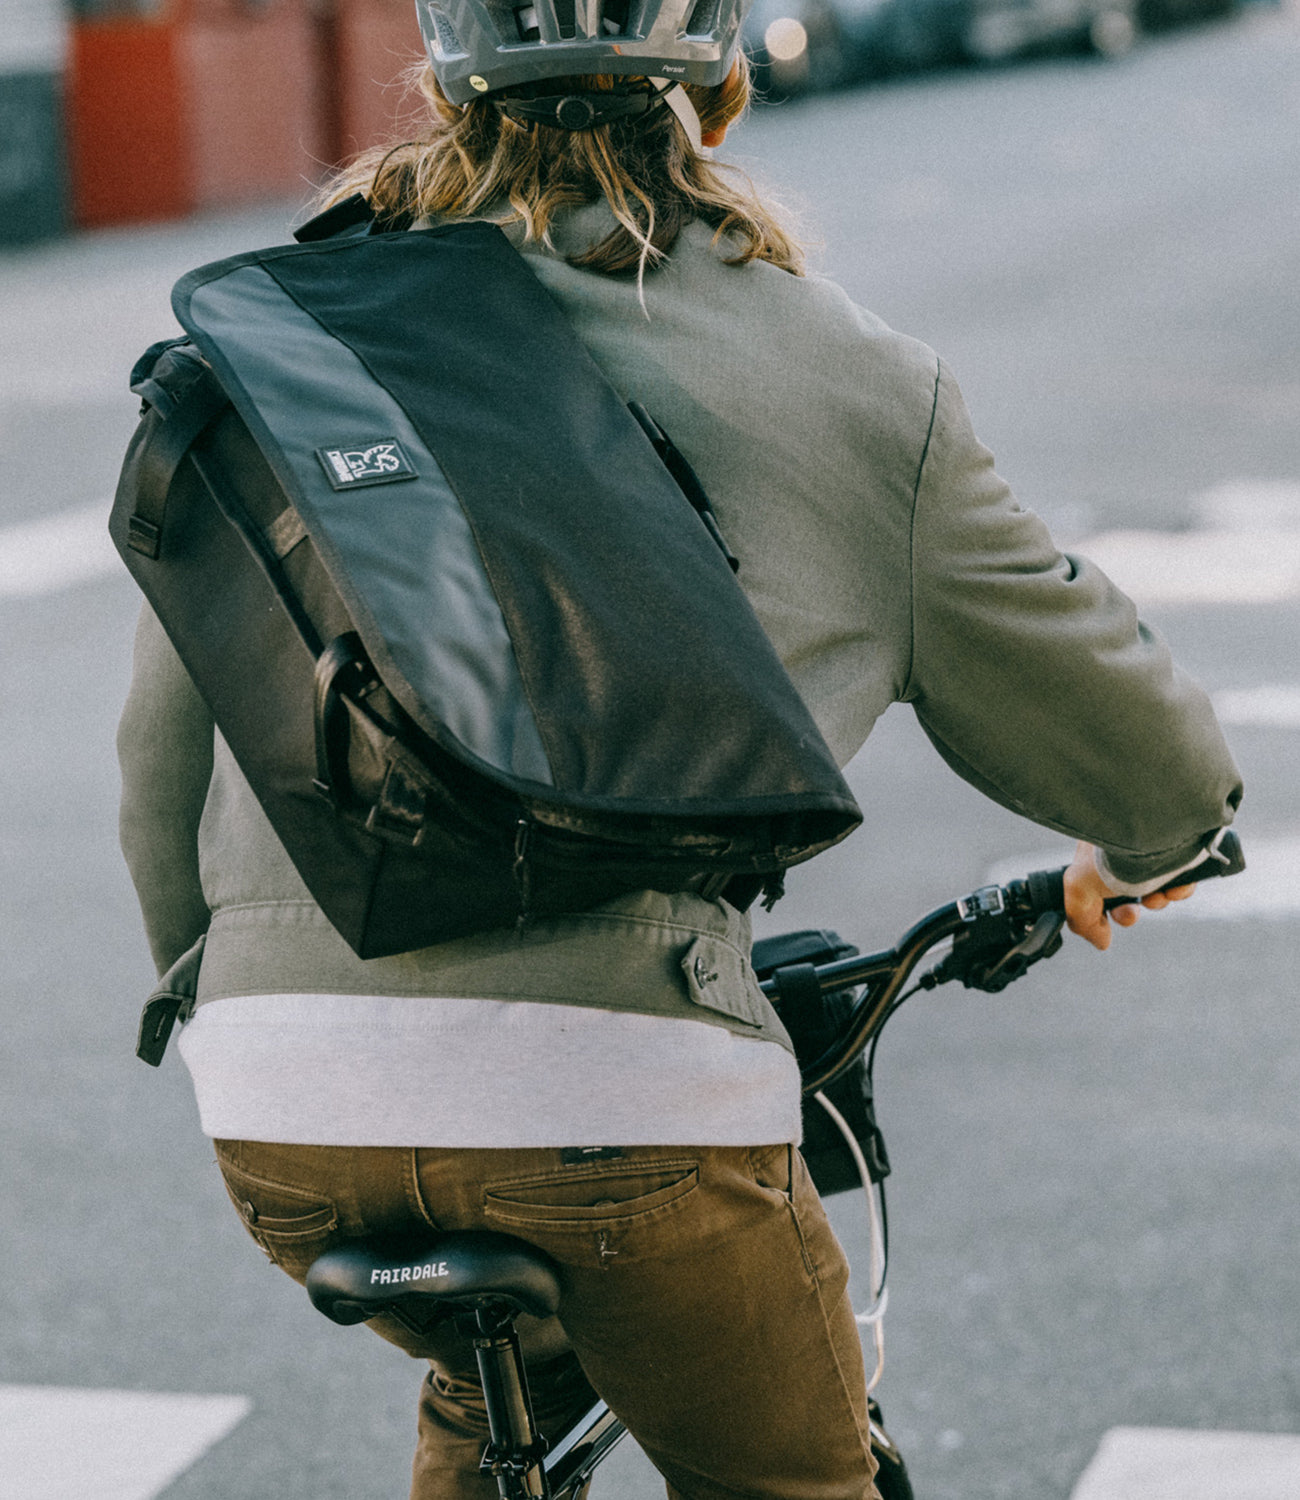 Bike Messenger Bags, Lifetime Warranty